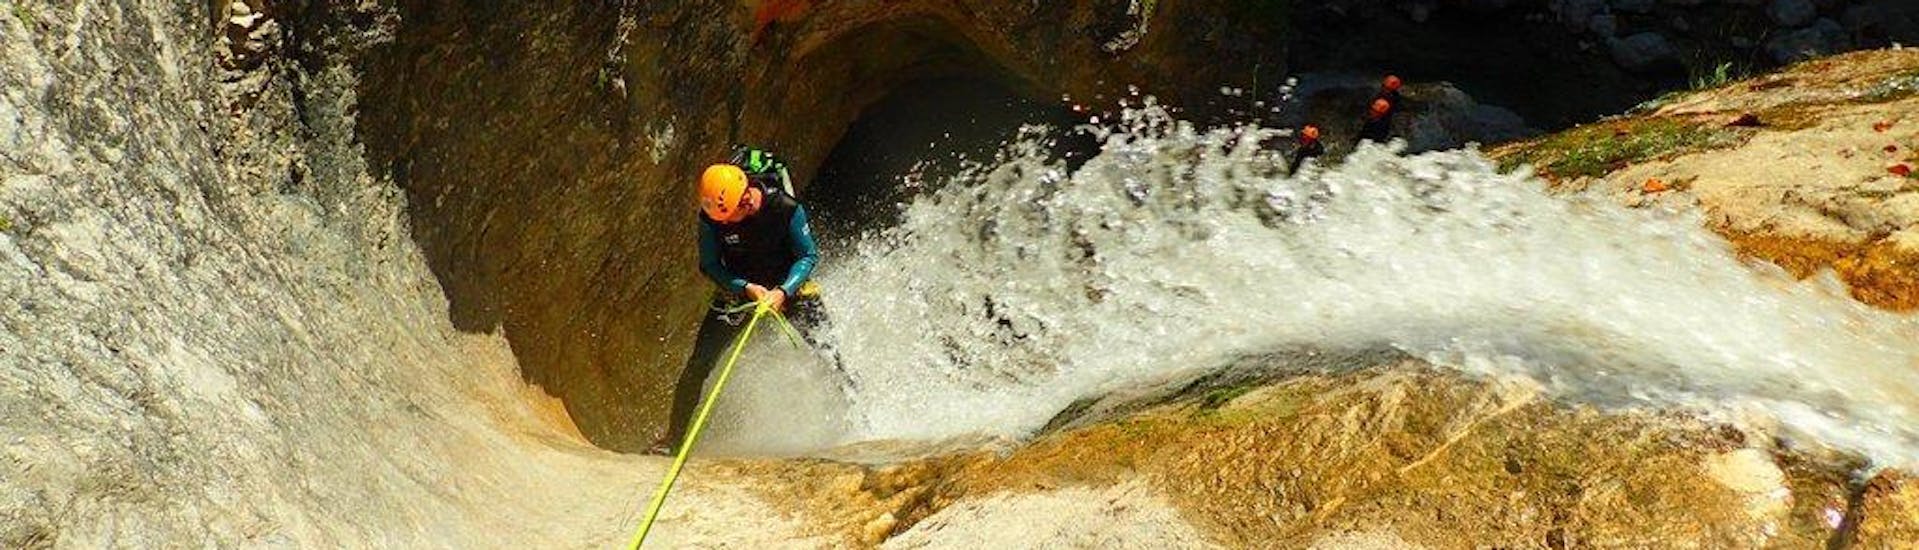 Ein Mann, der sich bei seiner Canoying "Vertikale" Tour mit Torrent Outdoor Experience in Fischbach an einem Wasserfall abseilt.